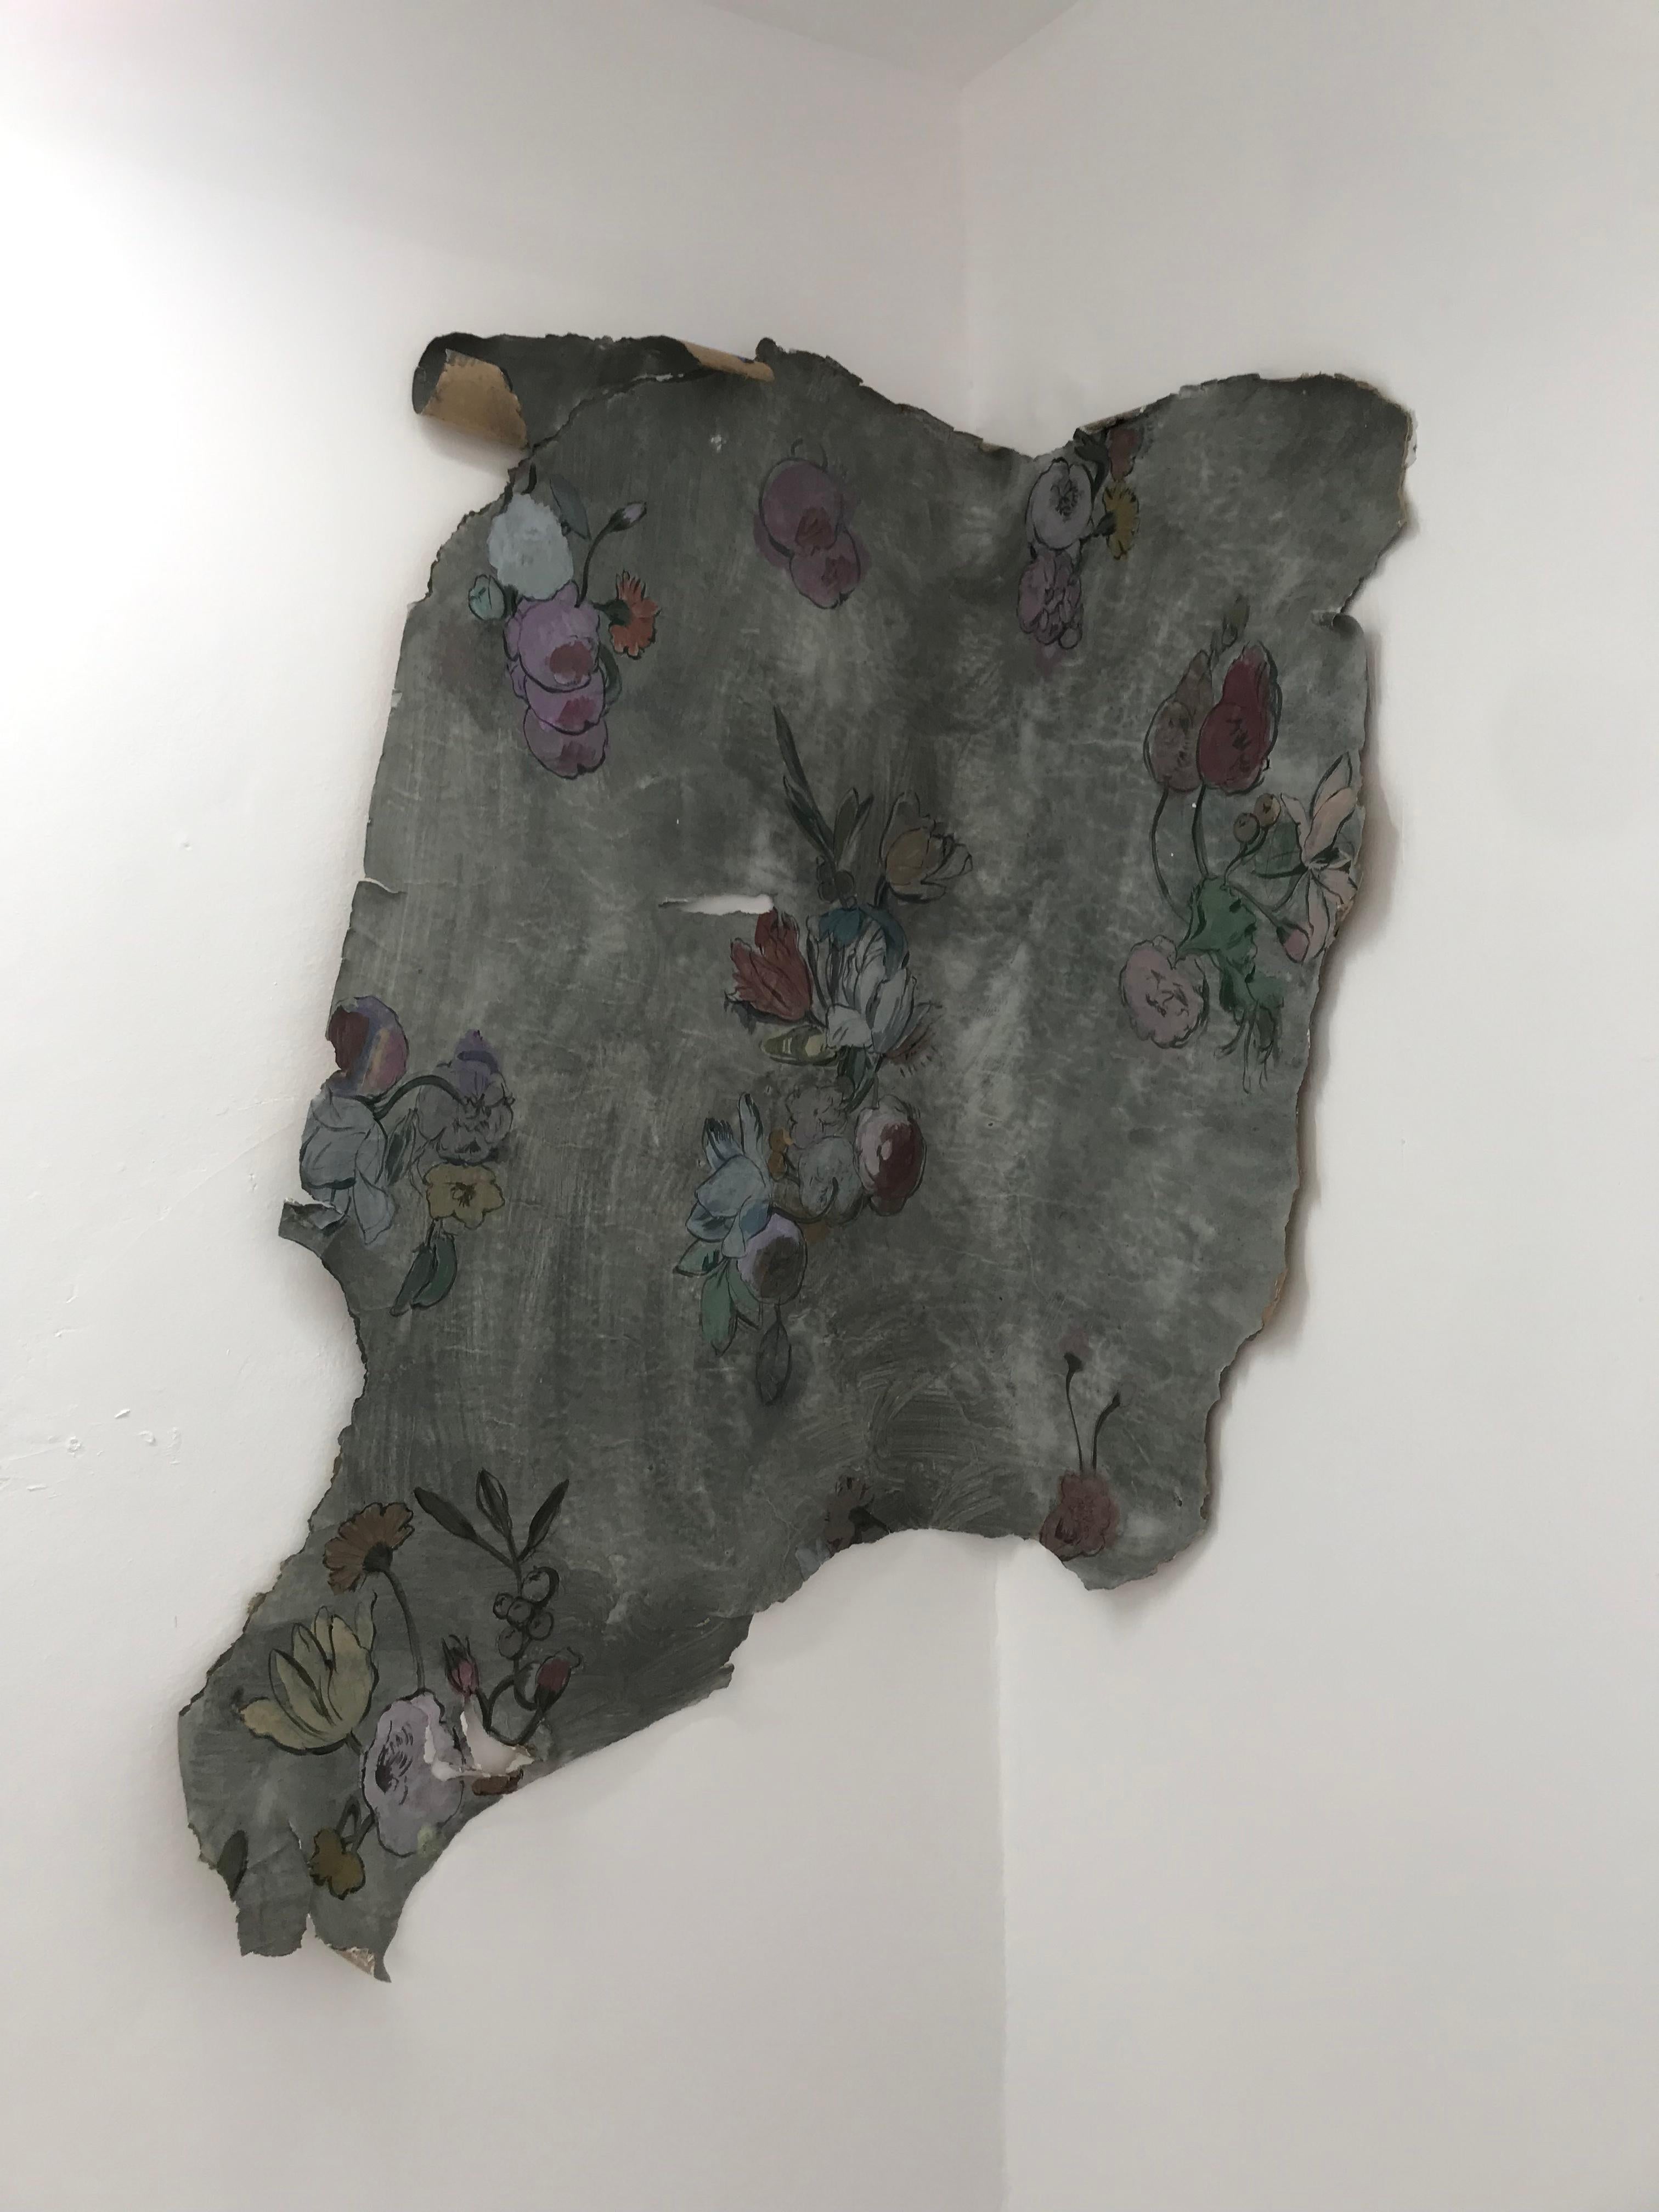 Figurative Painting Gonzalo García - « Fragmento de mémoire en el espacio », tapisserie, allégorie, bouquets, figuratif